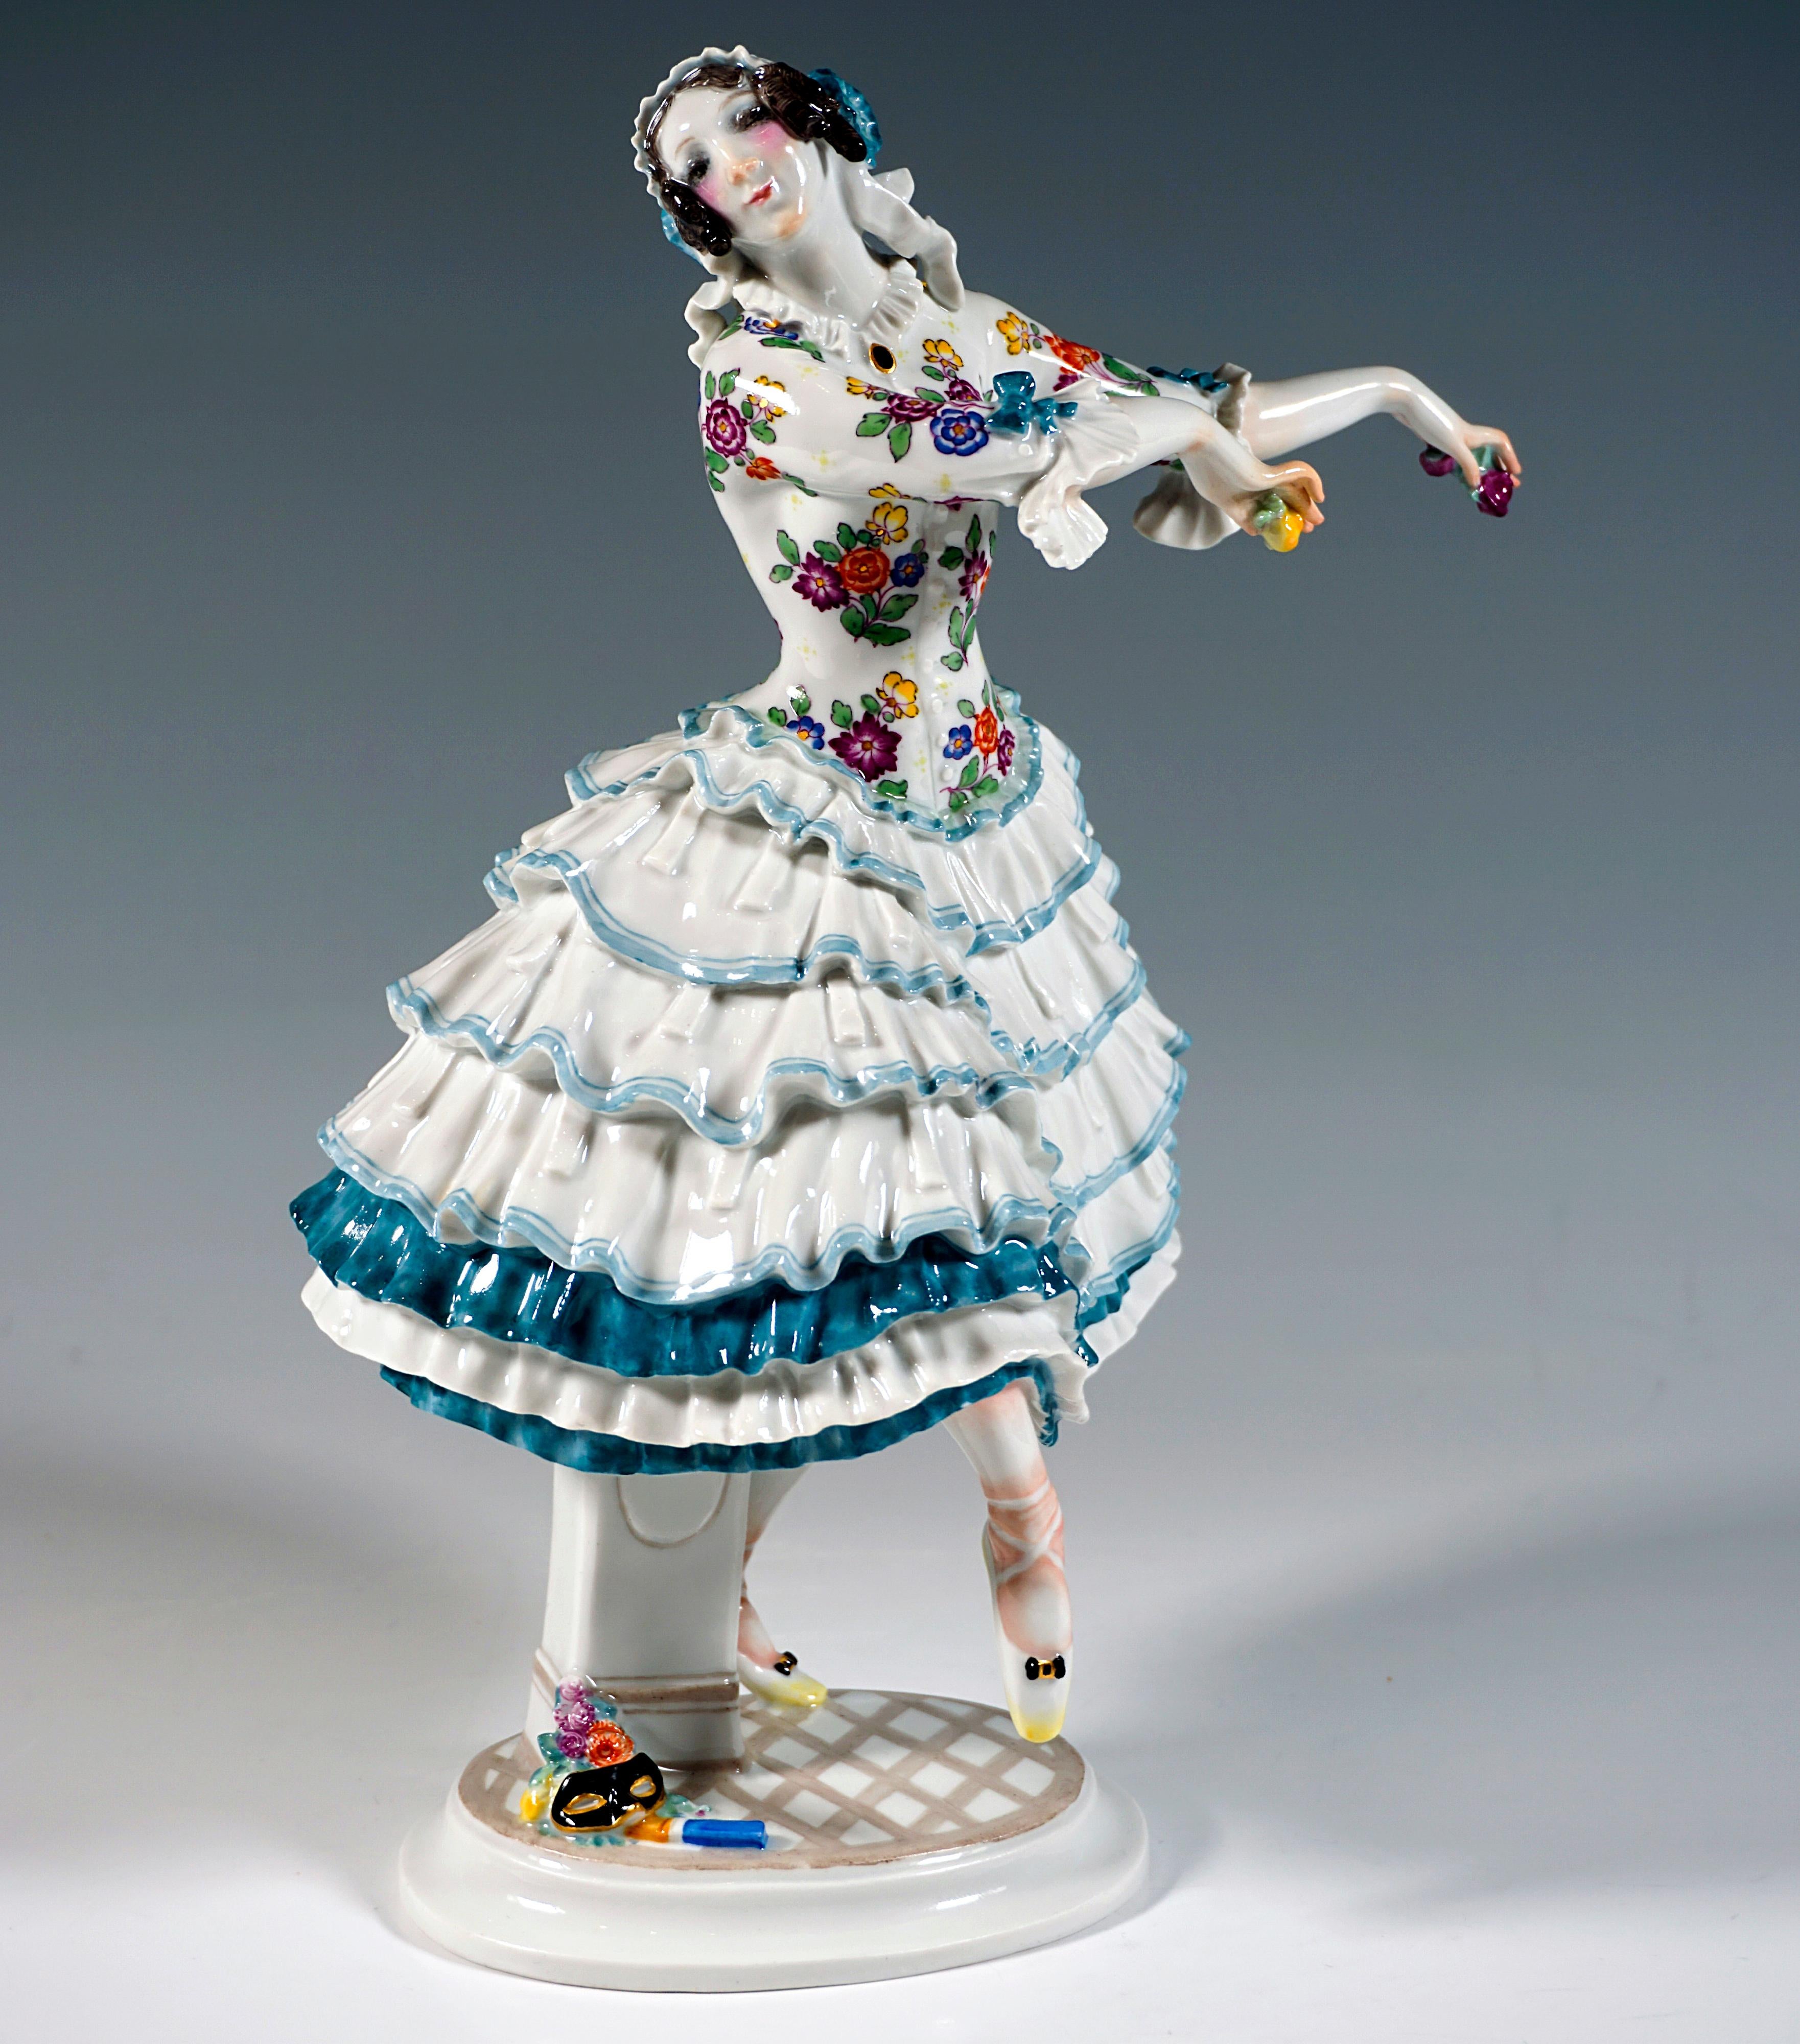 Figurine en porcelaine de Meissen :
La danseuse se tient en équilibre sur la pointe du pied gauche, soulève légèrement la jambe droite vers l'avant, le pied tendu vers le bas, penche la tête vers la droite et ramène élégamment les deux bras sur le